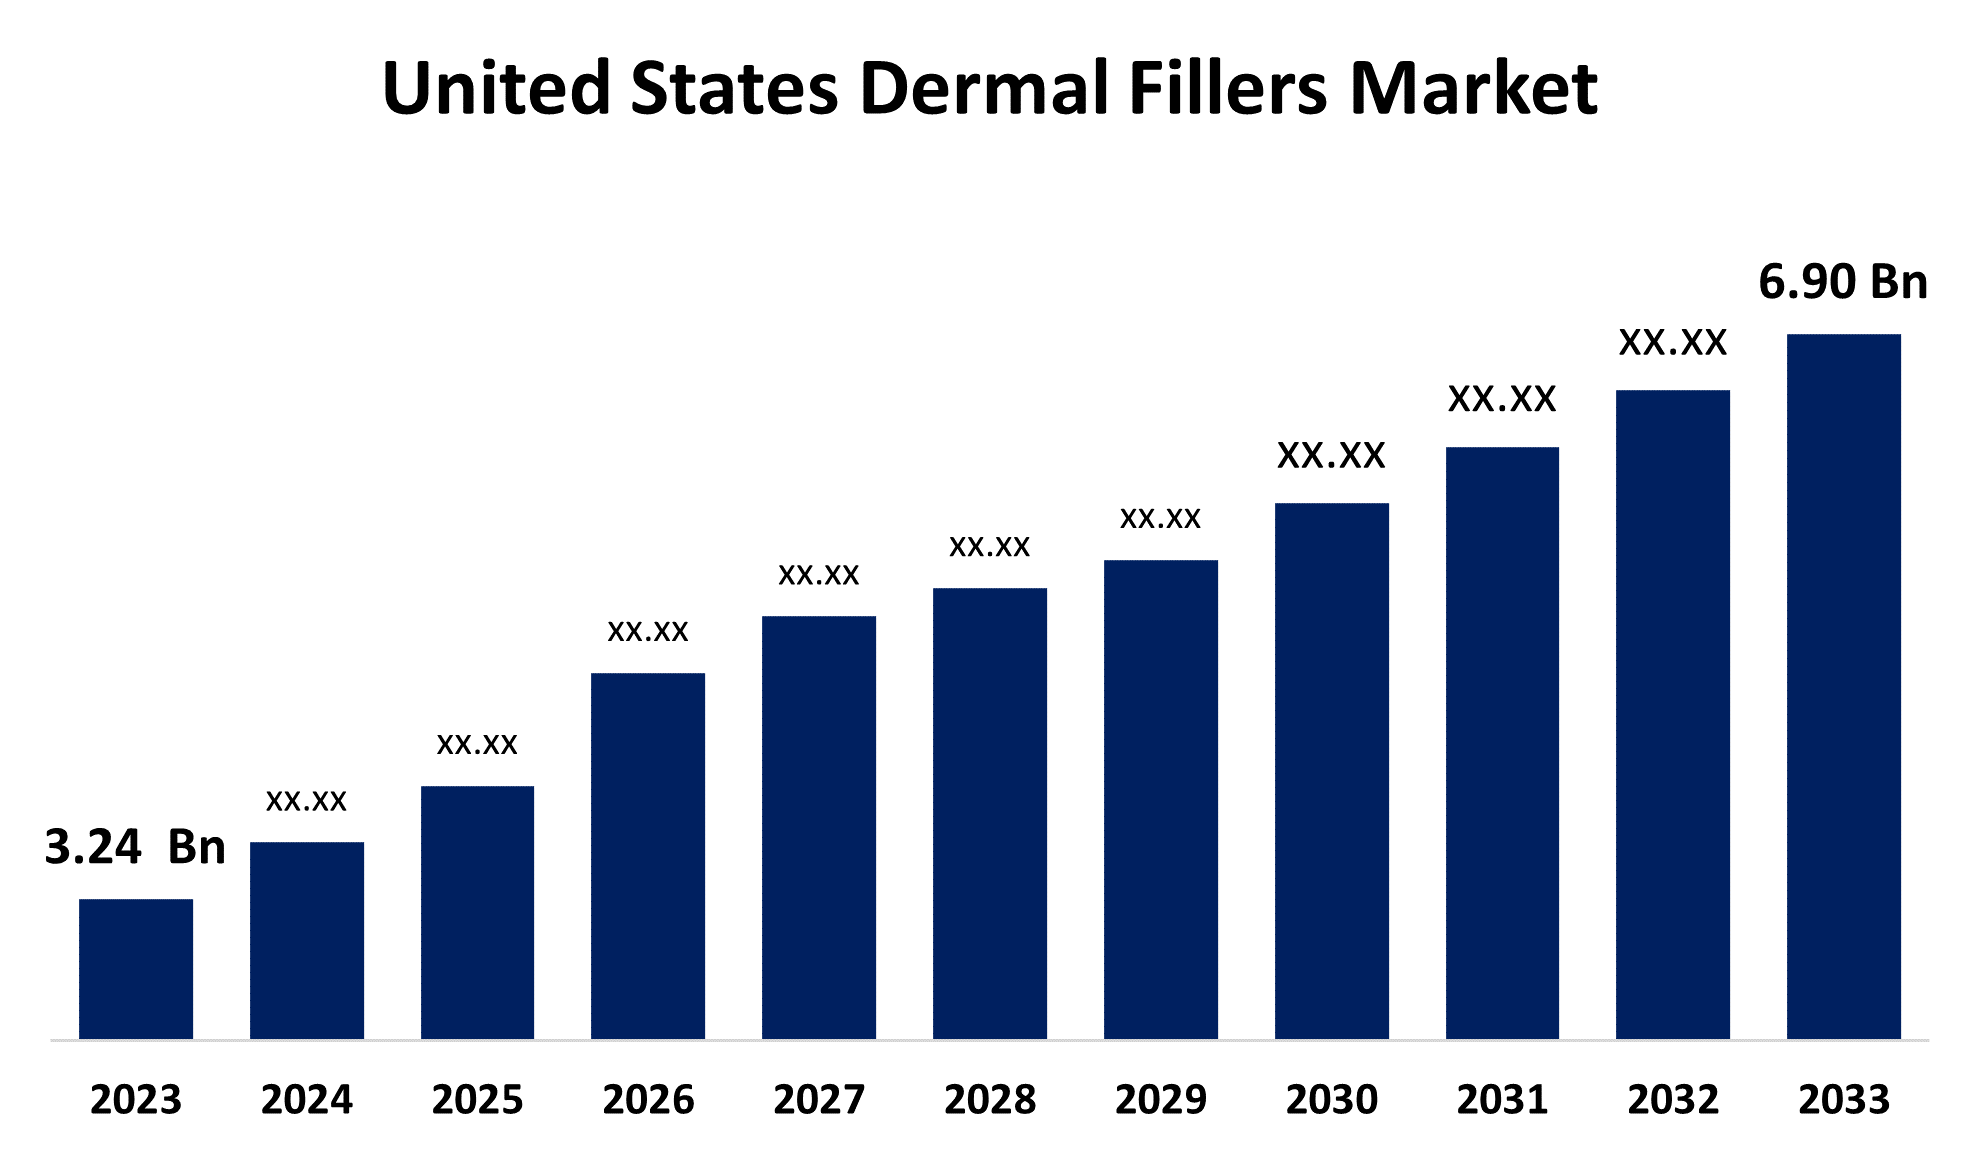 United States Dermal Fillers Market